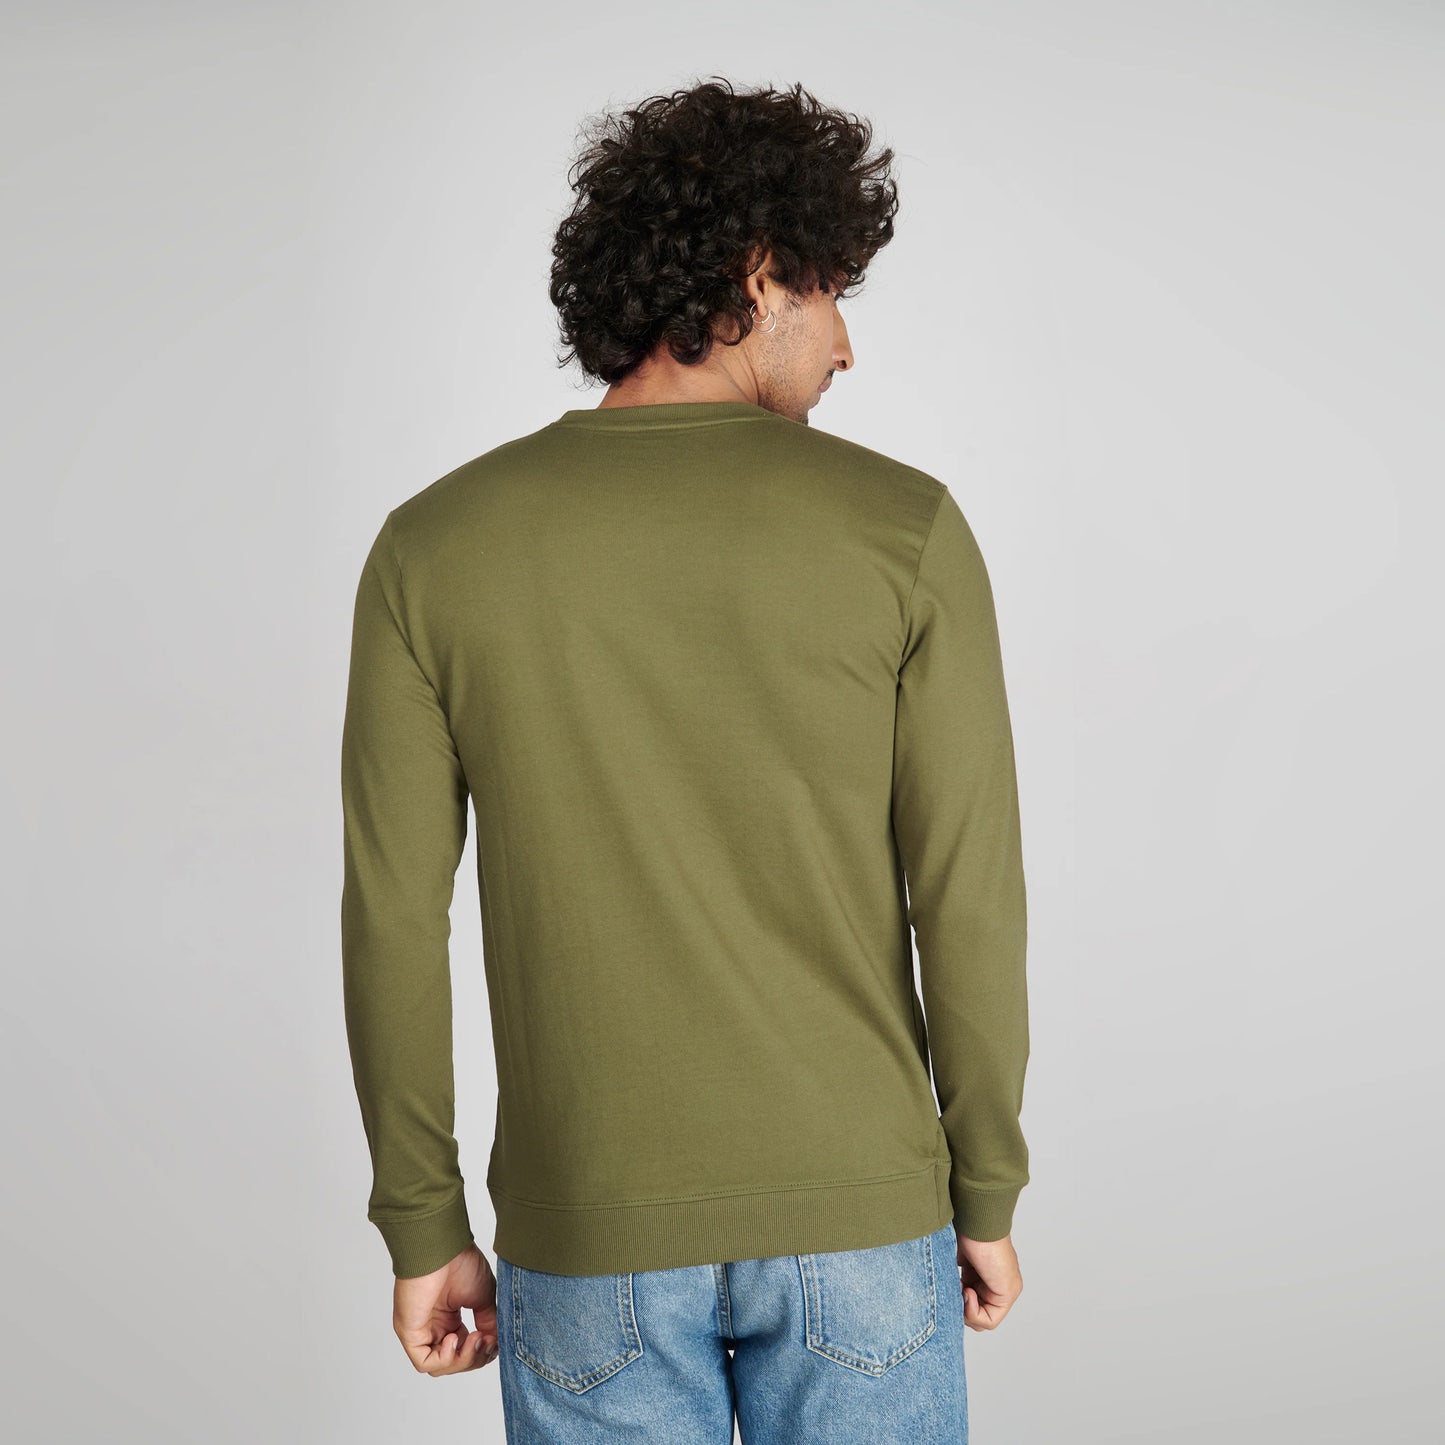 Basic Army Green Sweatshirt